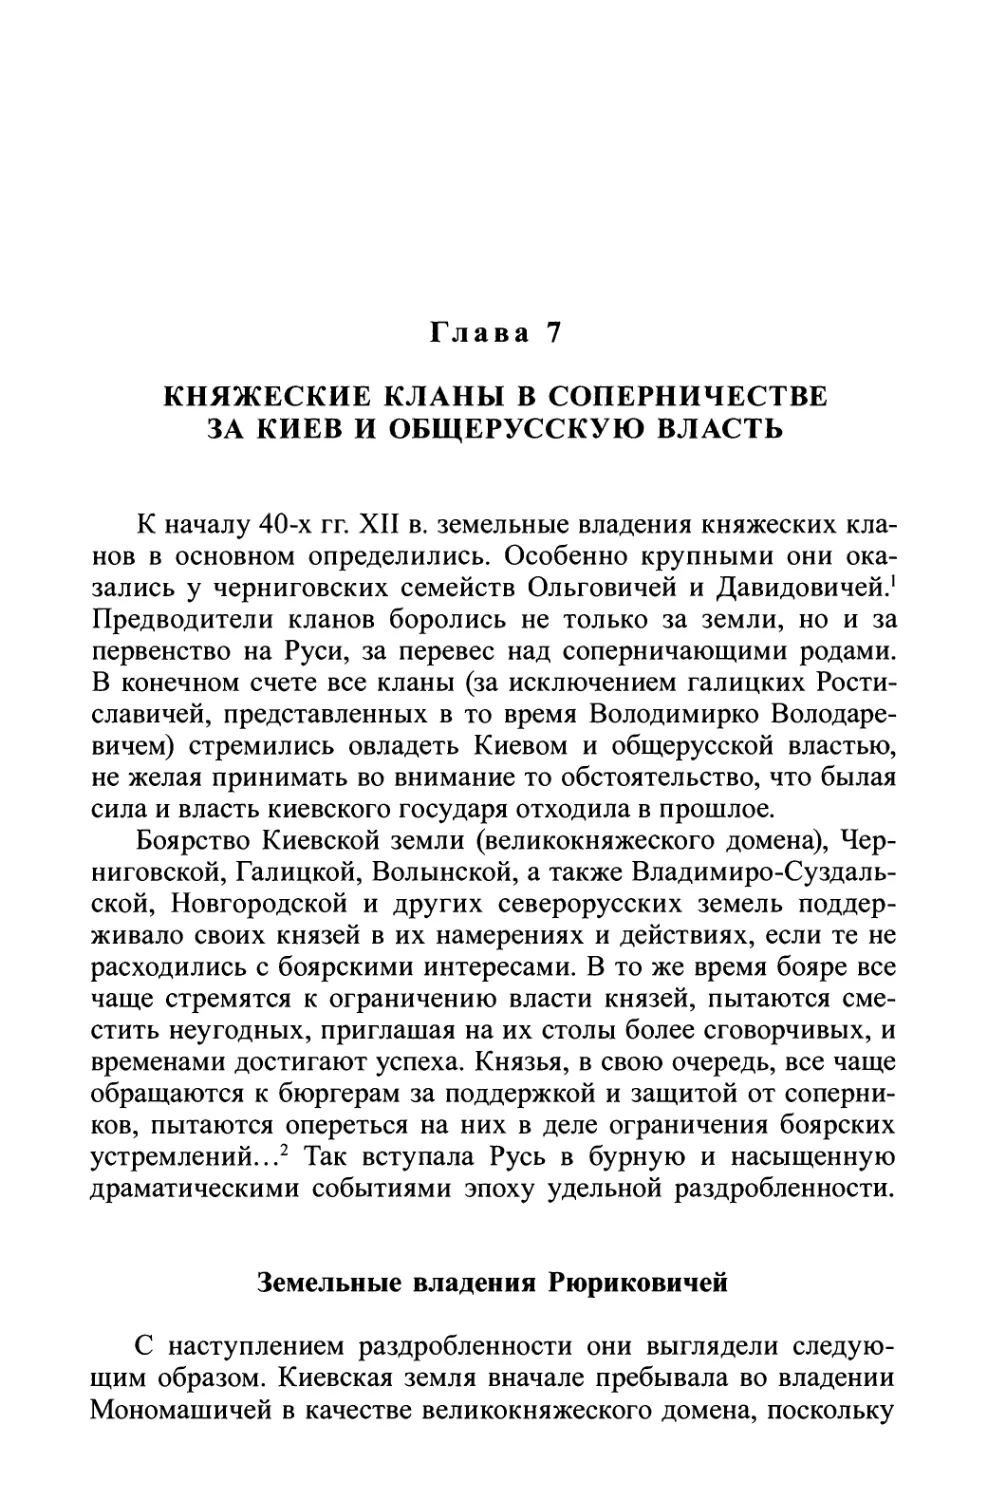 Глава 7. Княжеские кланы в соперничестве за Киев и общерусскую власть